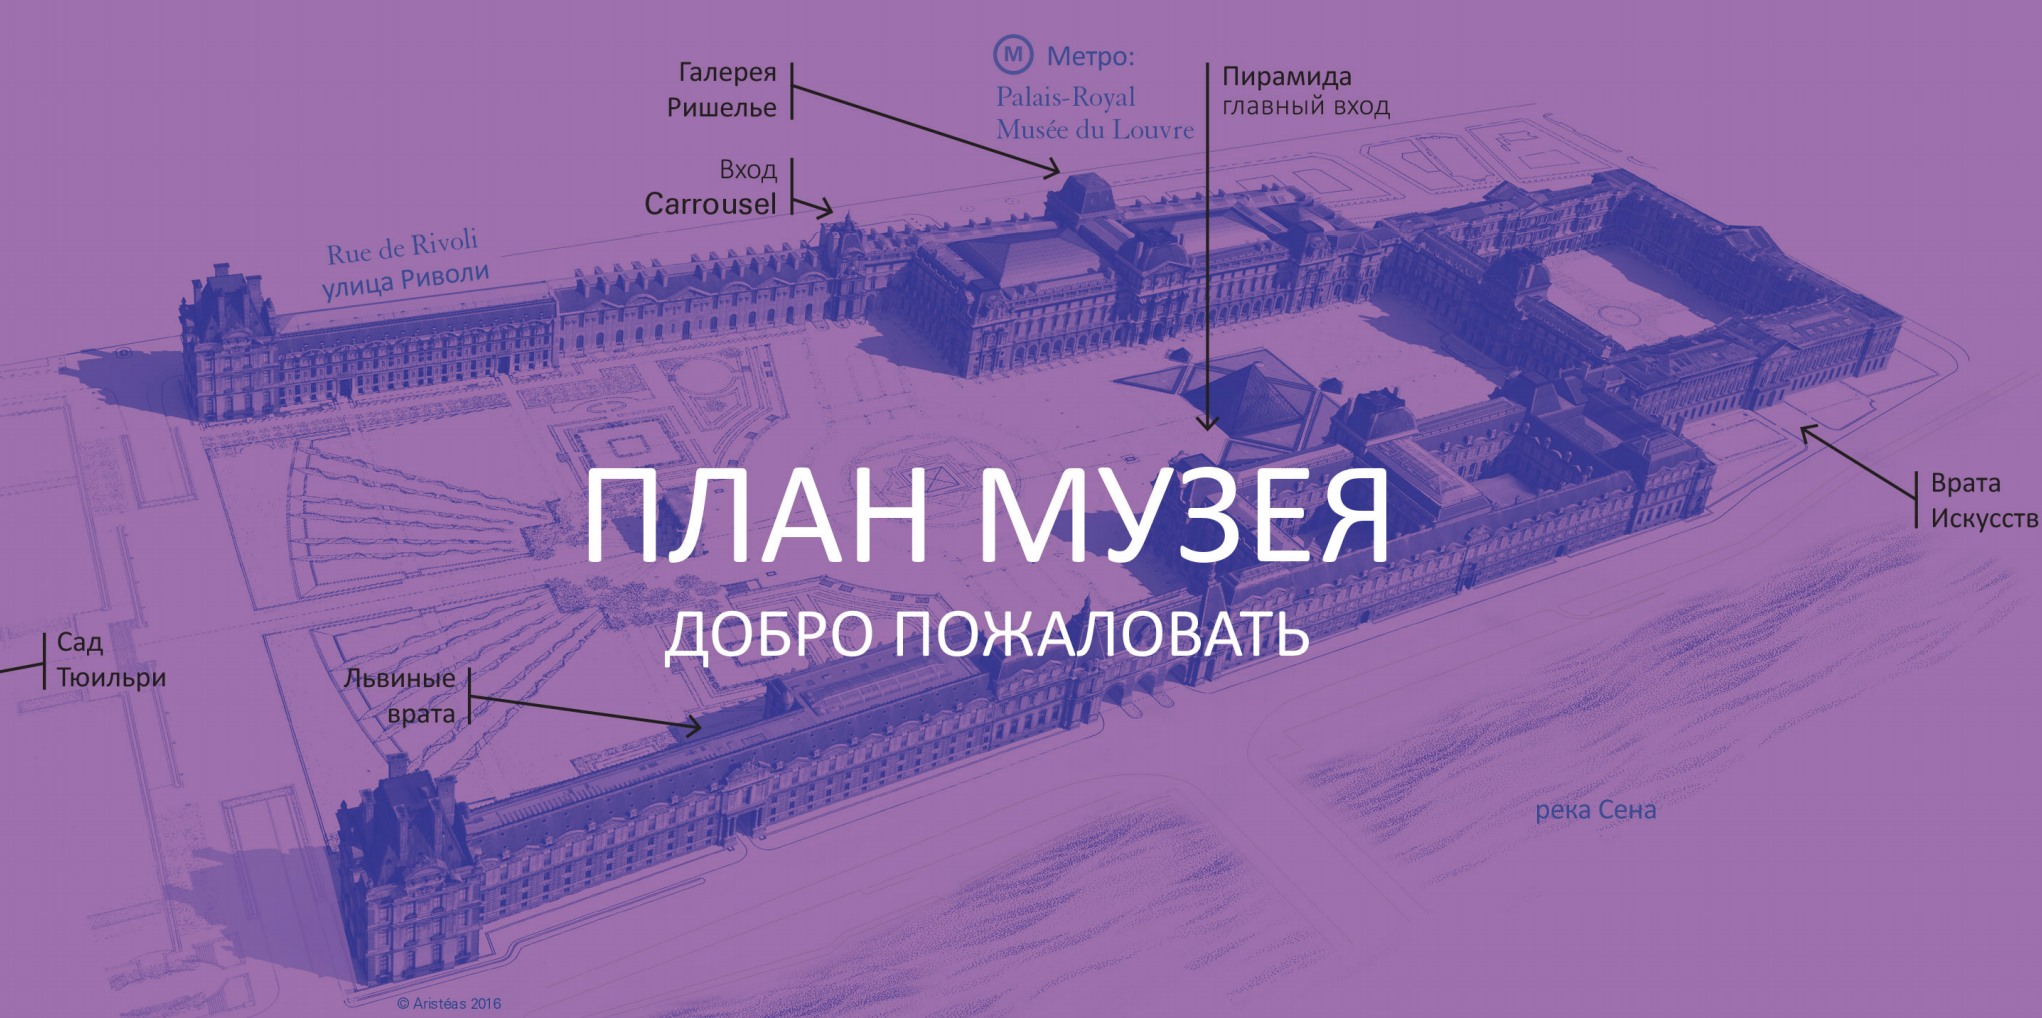 Залы Лувра на русском языке